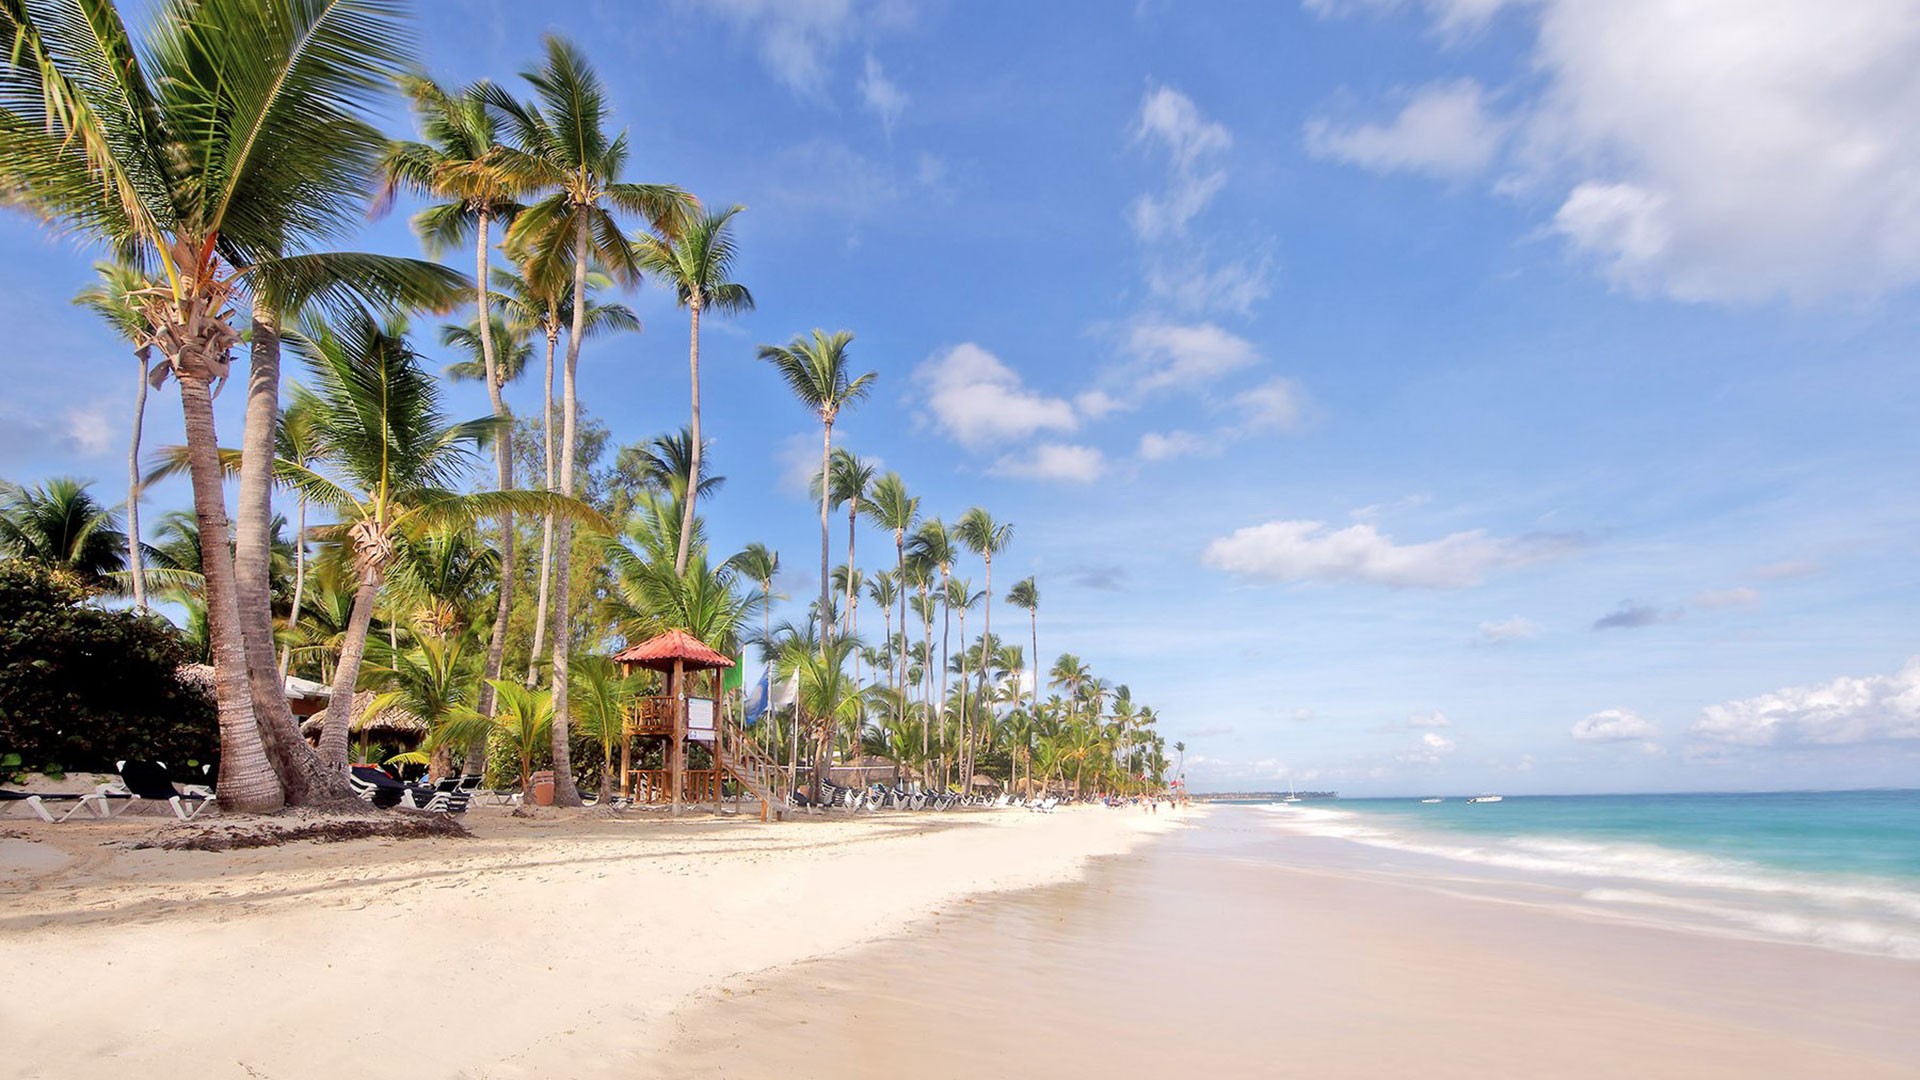 Vista de la playa y un hotel típico de Punta Cana, una de las Priceless Cities de MasterCard